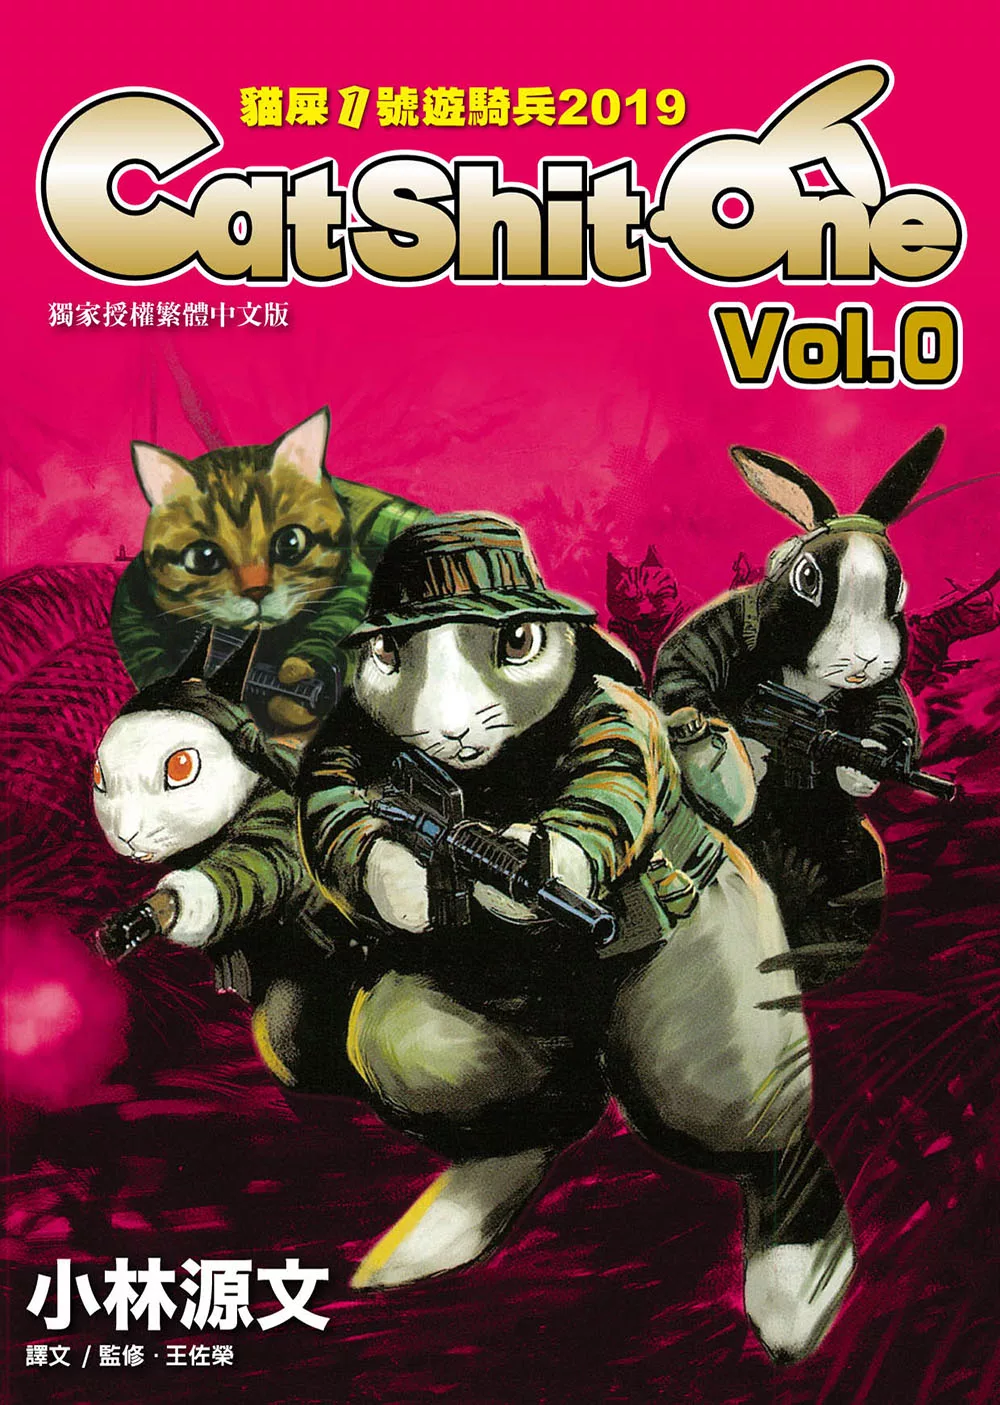 貓屎1號遊騎兵2019 Cat Shit One VOL.0 (電子書)